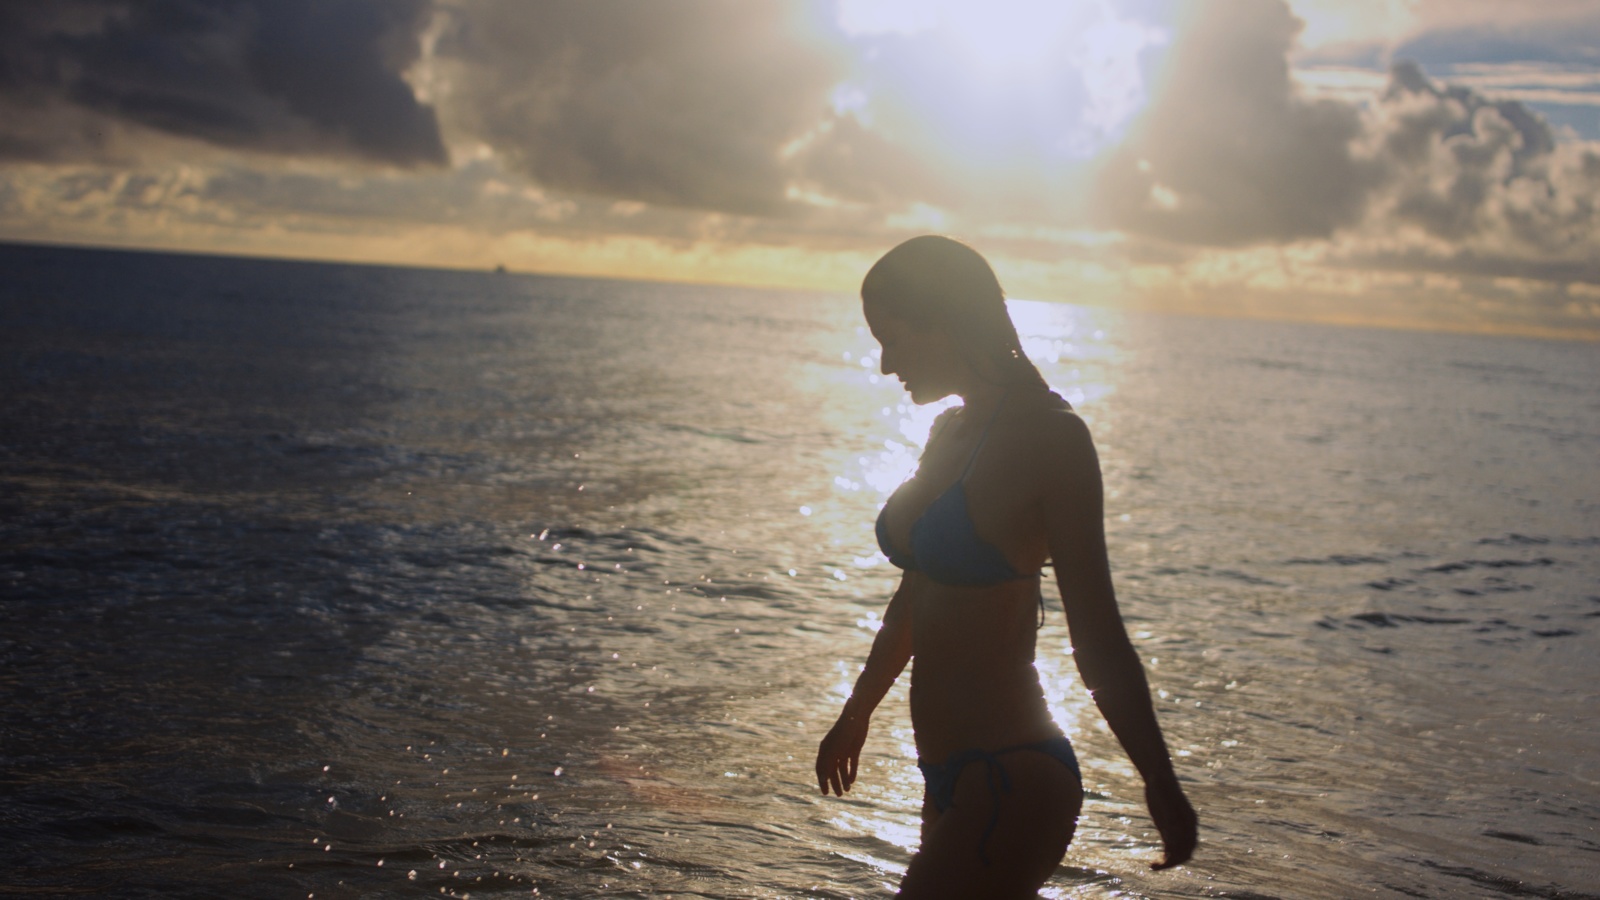 Side profile of woman wearing a bikini walking along a beach at sunset